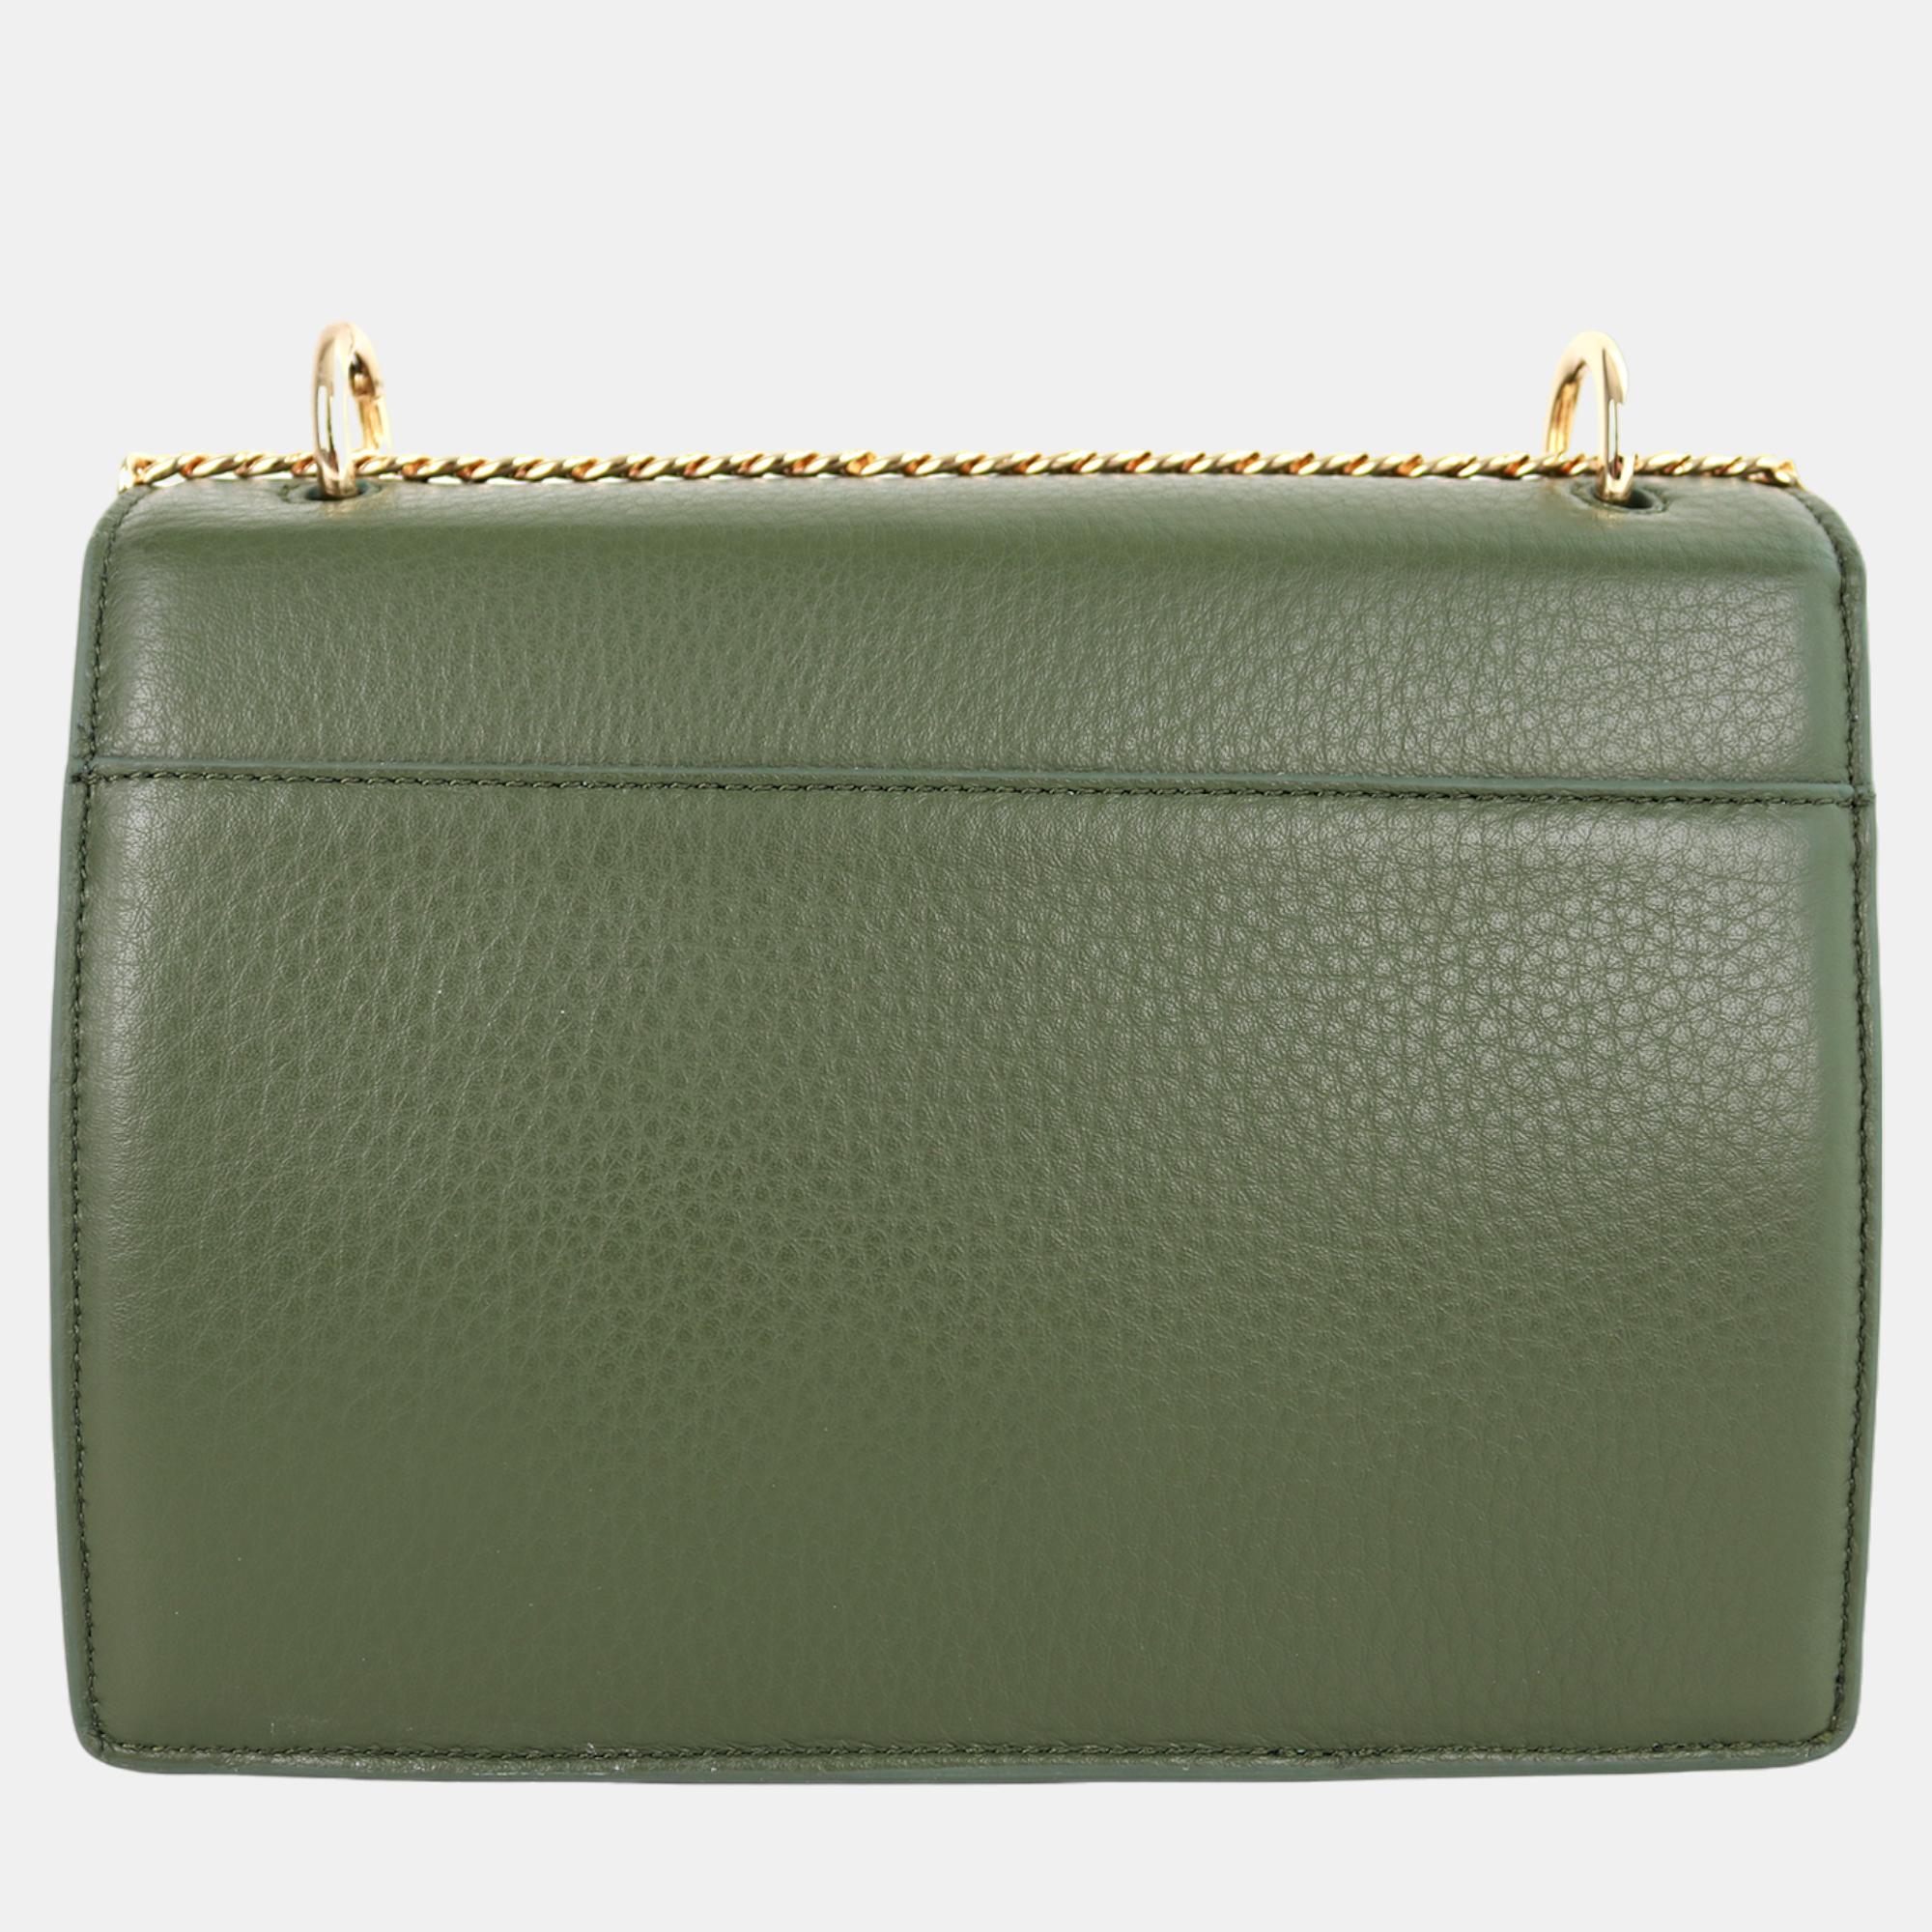 Charriol Military Green Leather Forever Handbag